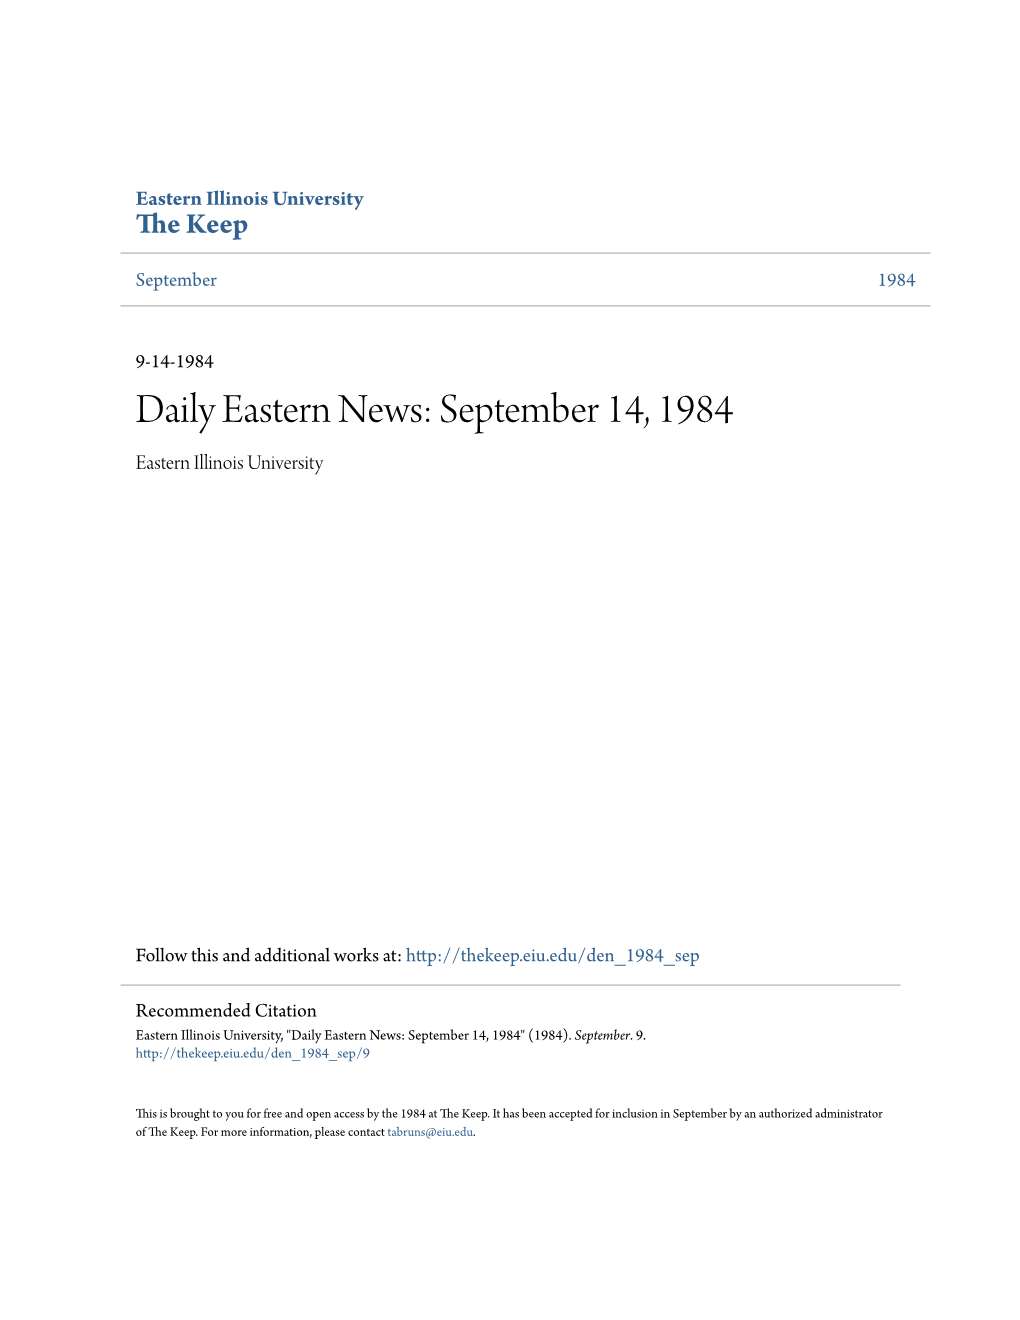 Daily Eastern News: September 14, 1984 Eastern Illinois University